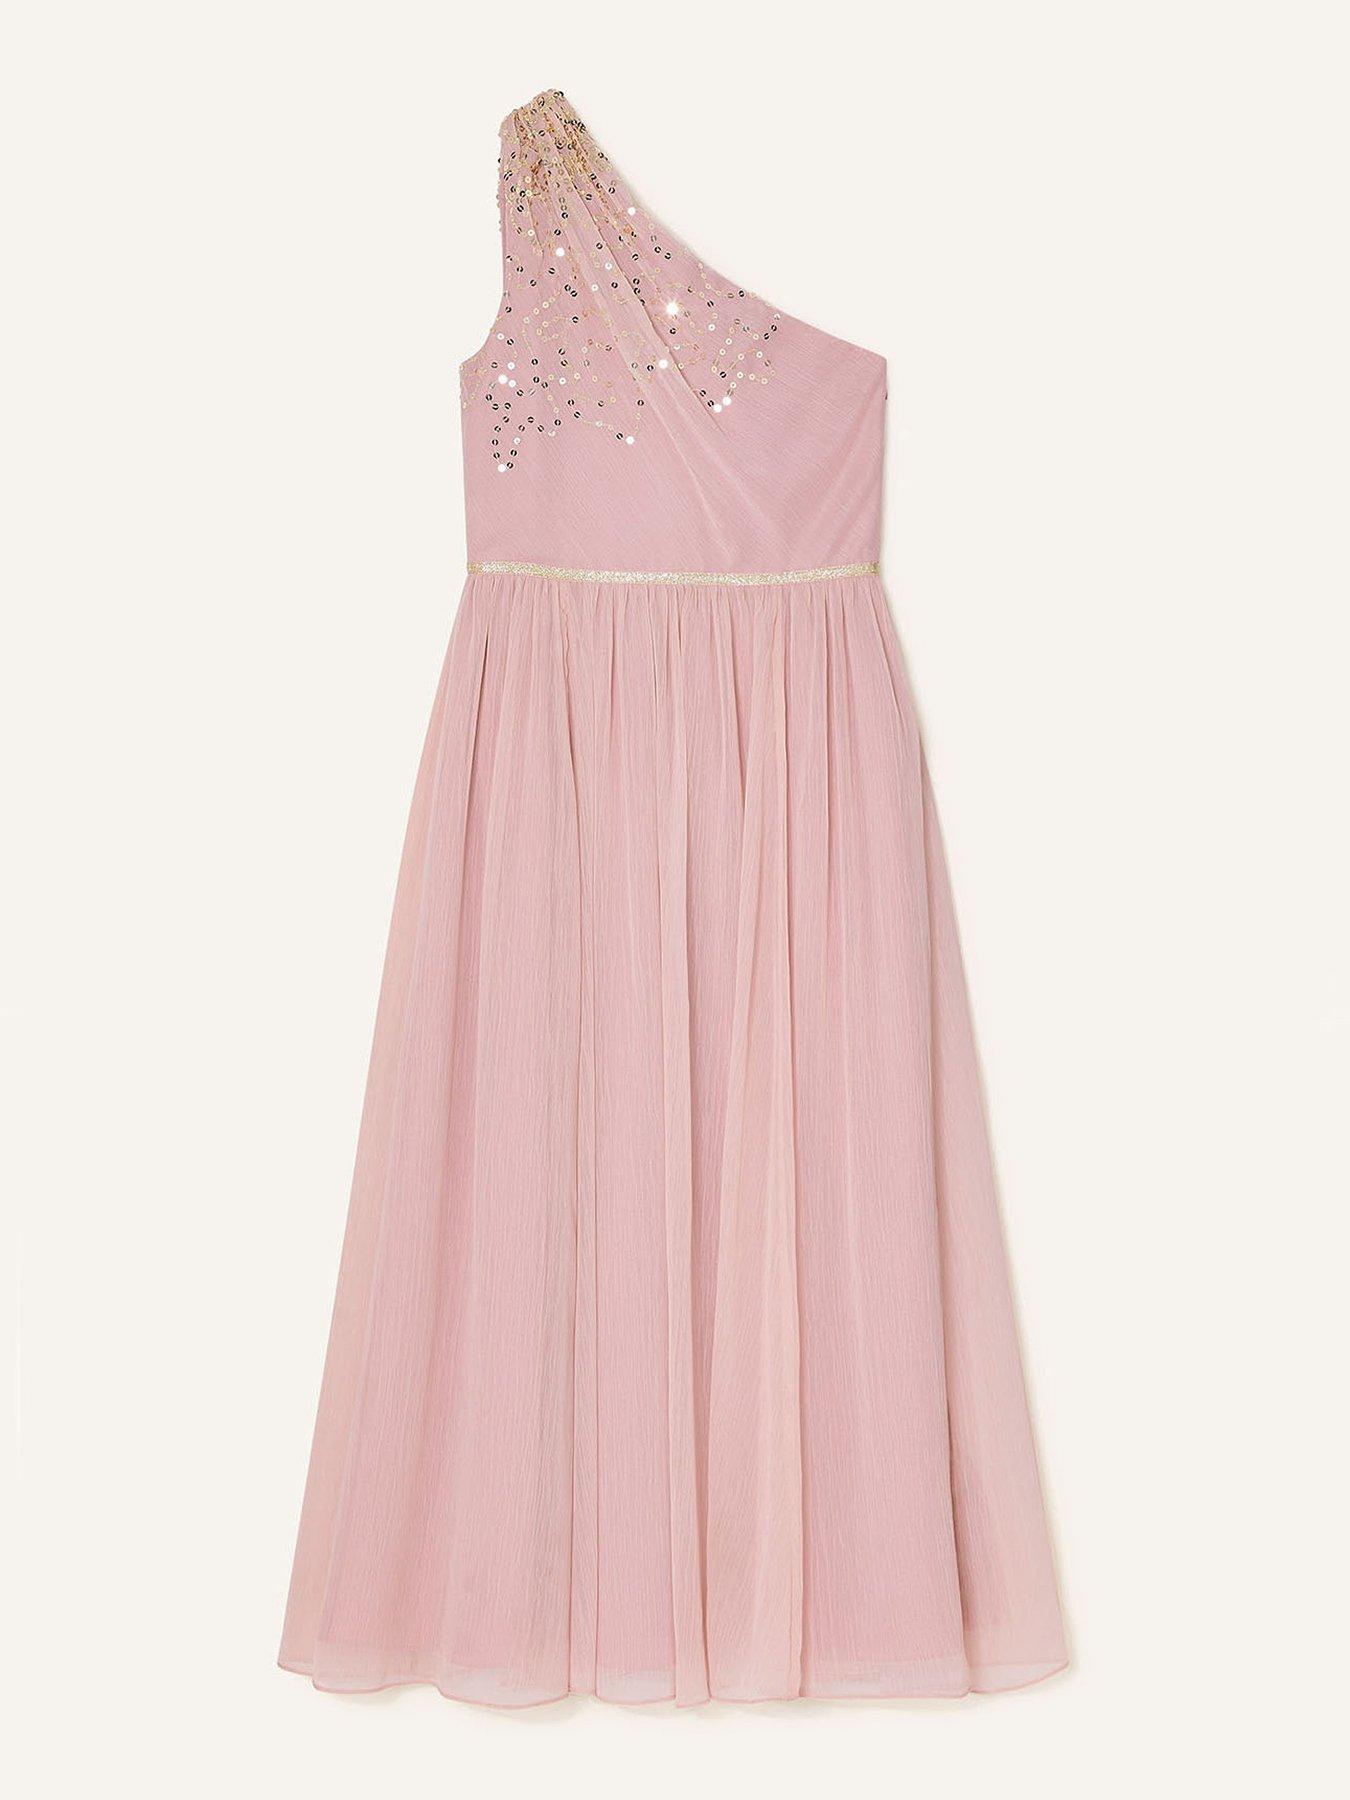  Girls Scatter Sequin One Shoulder Prom Dress - Dusky Pink